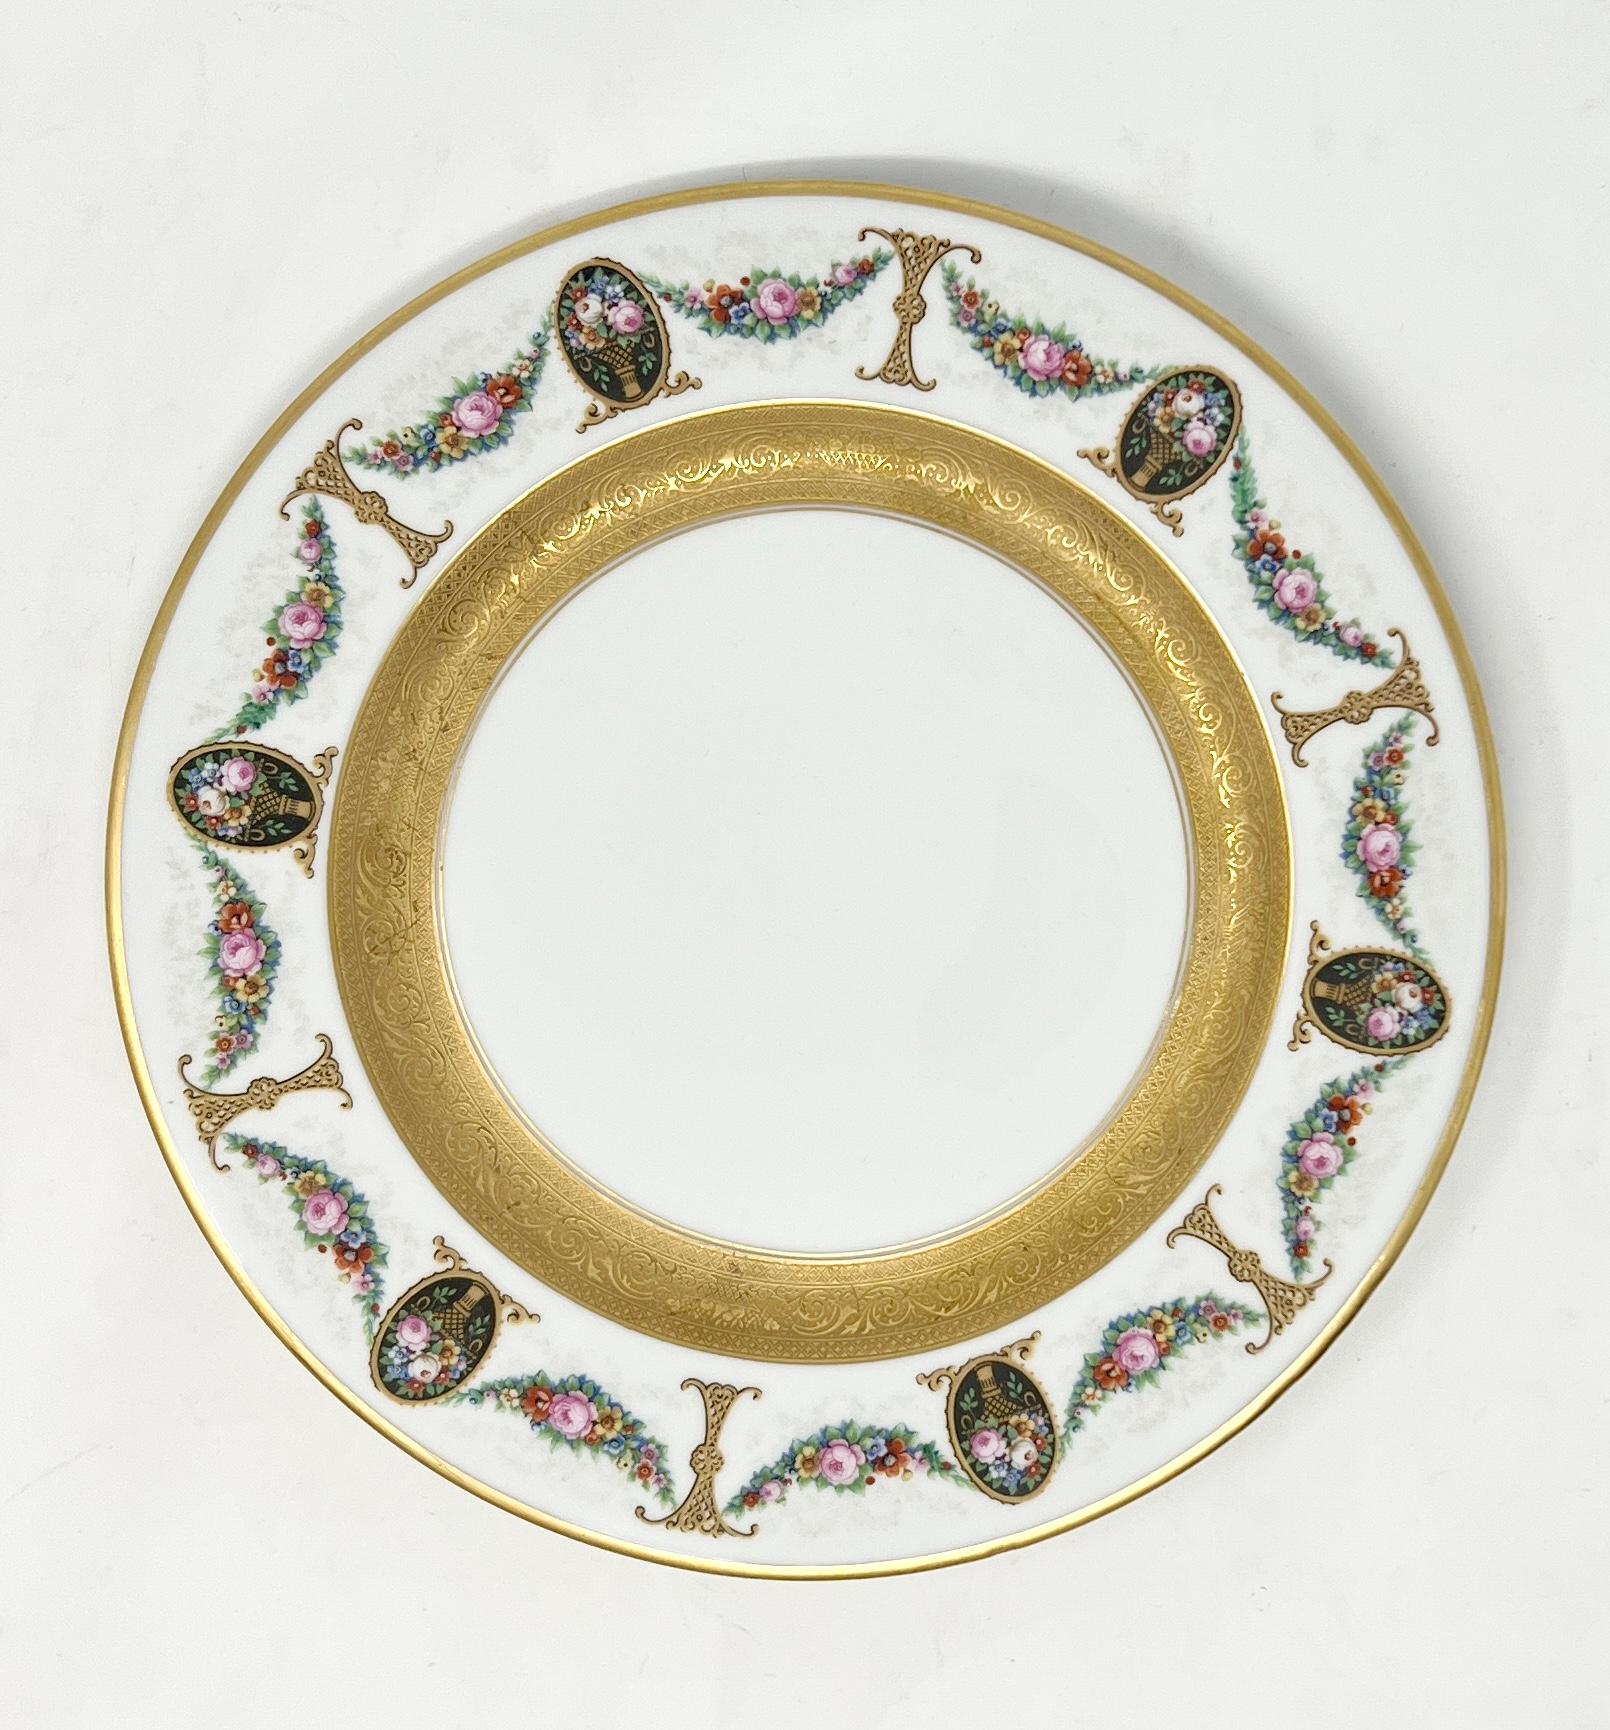 Ensemble de 24 assiettes à dîner anciennes en porcelaine royale de Bavière Circa 1910-1915.
Fleurs et guirlandes roses sur fond crème avec détails de feuilles d'or peints à la main.